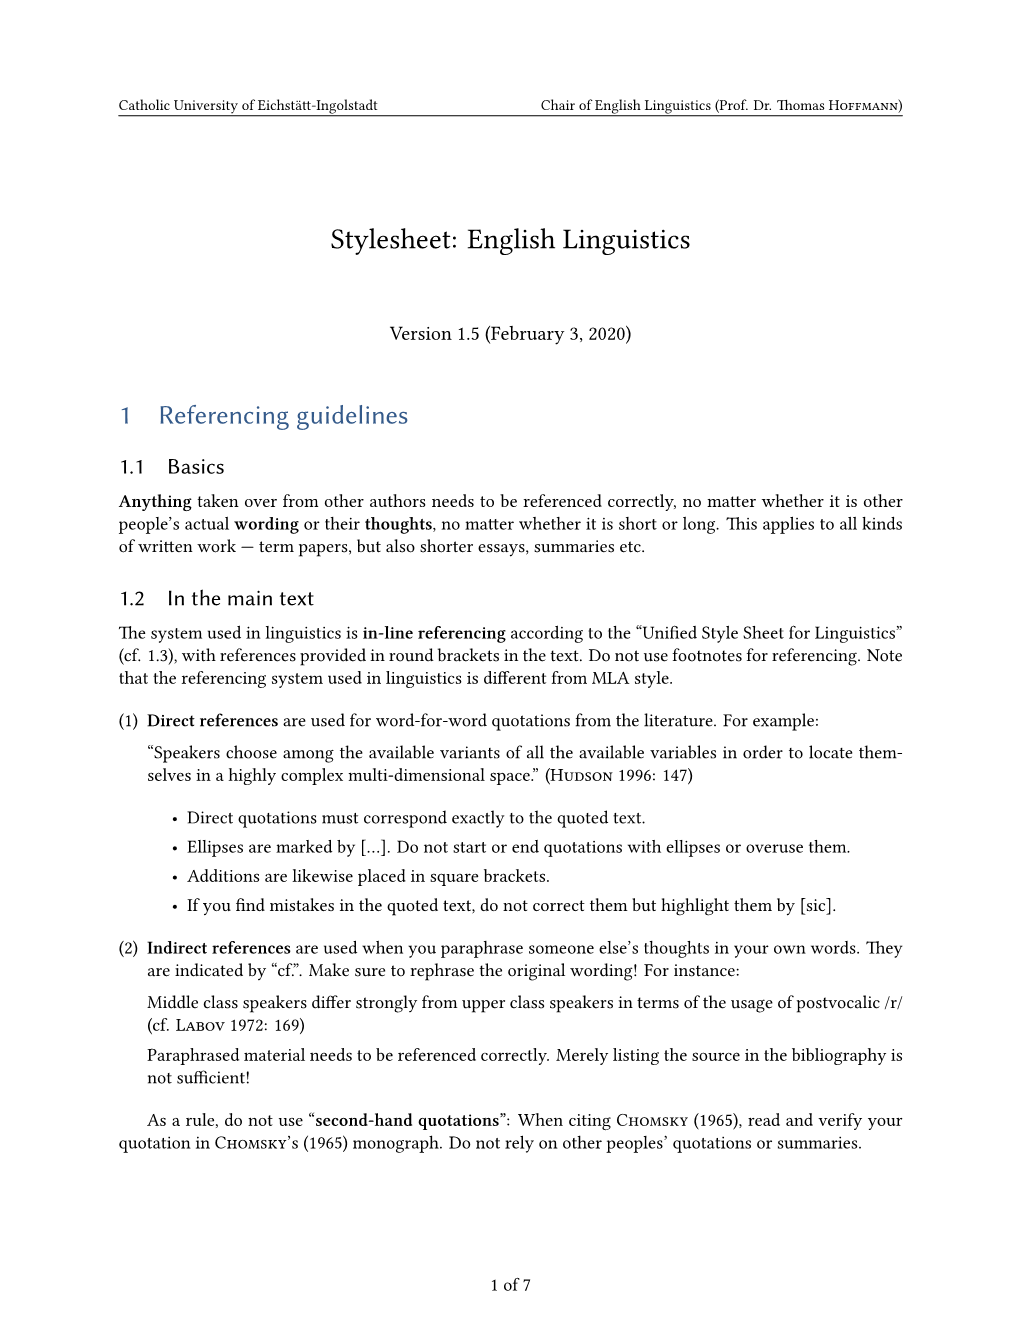 Stylesheet: English Linguistics